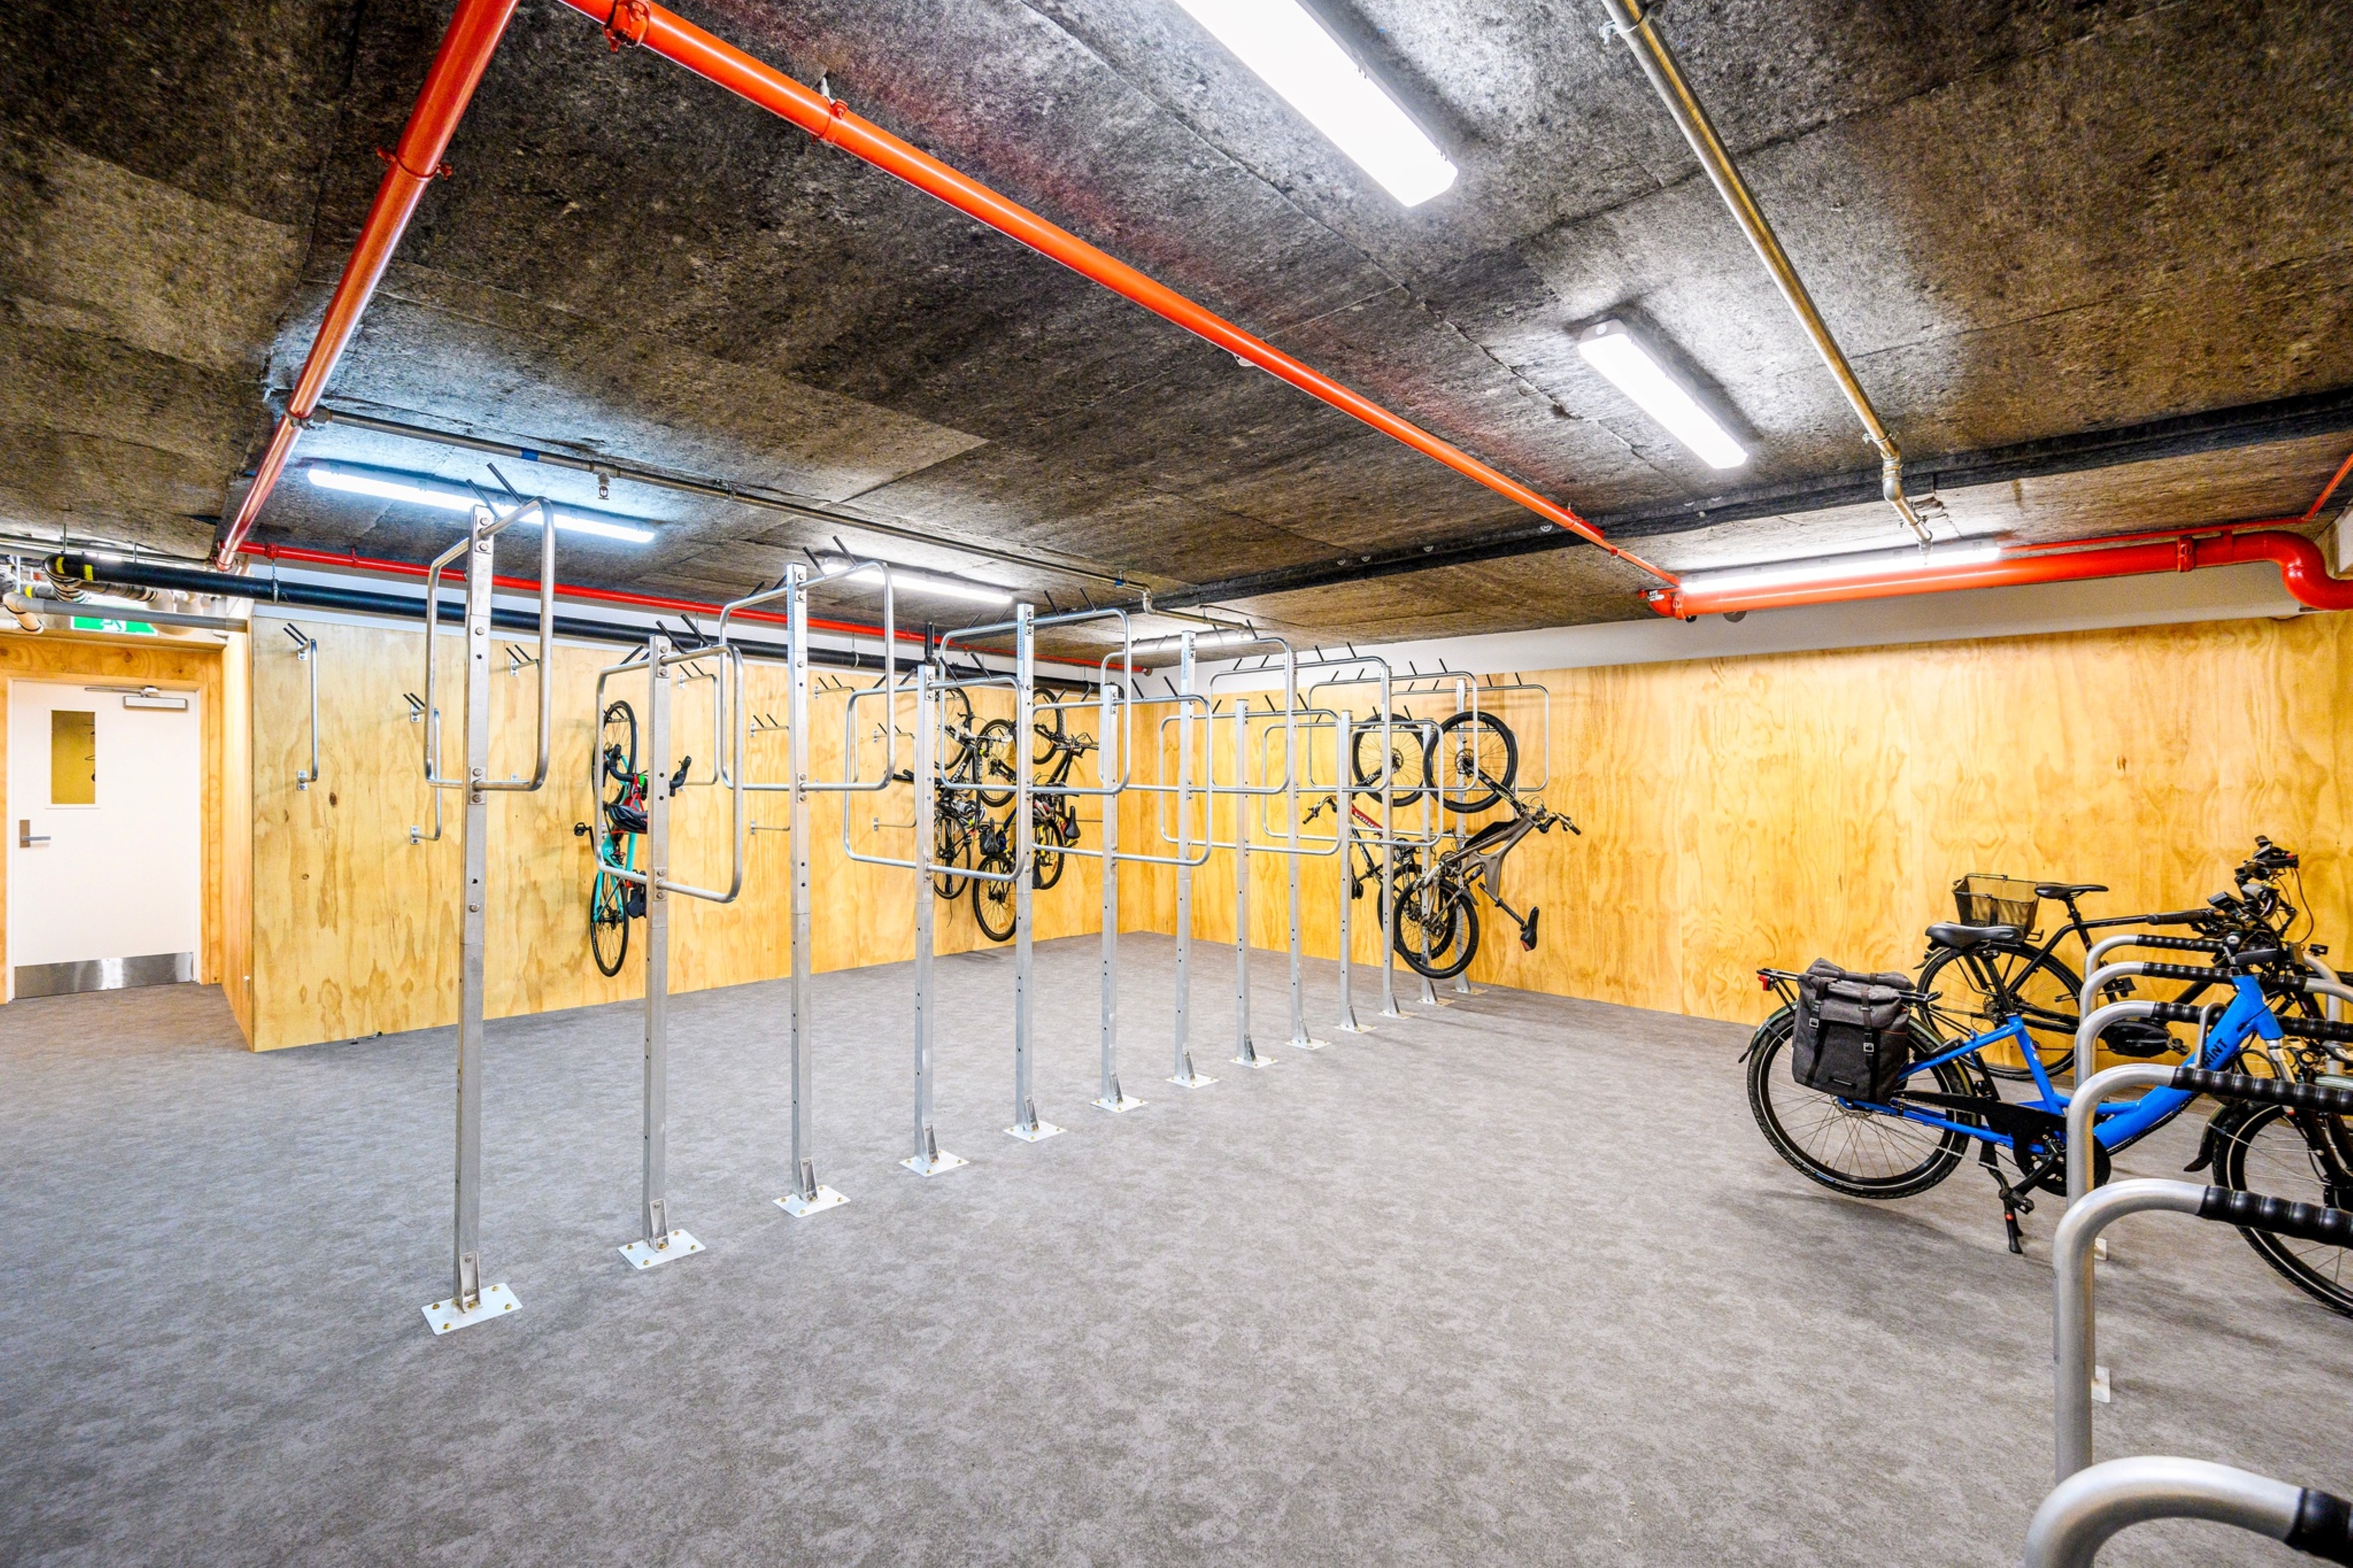 Bike Room